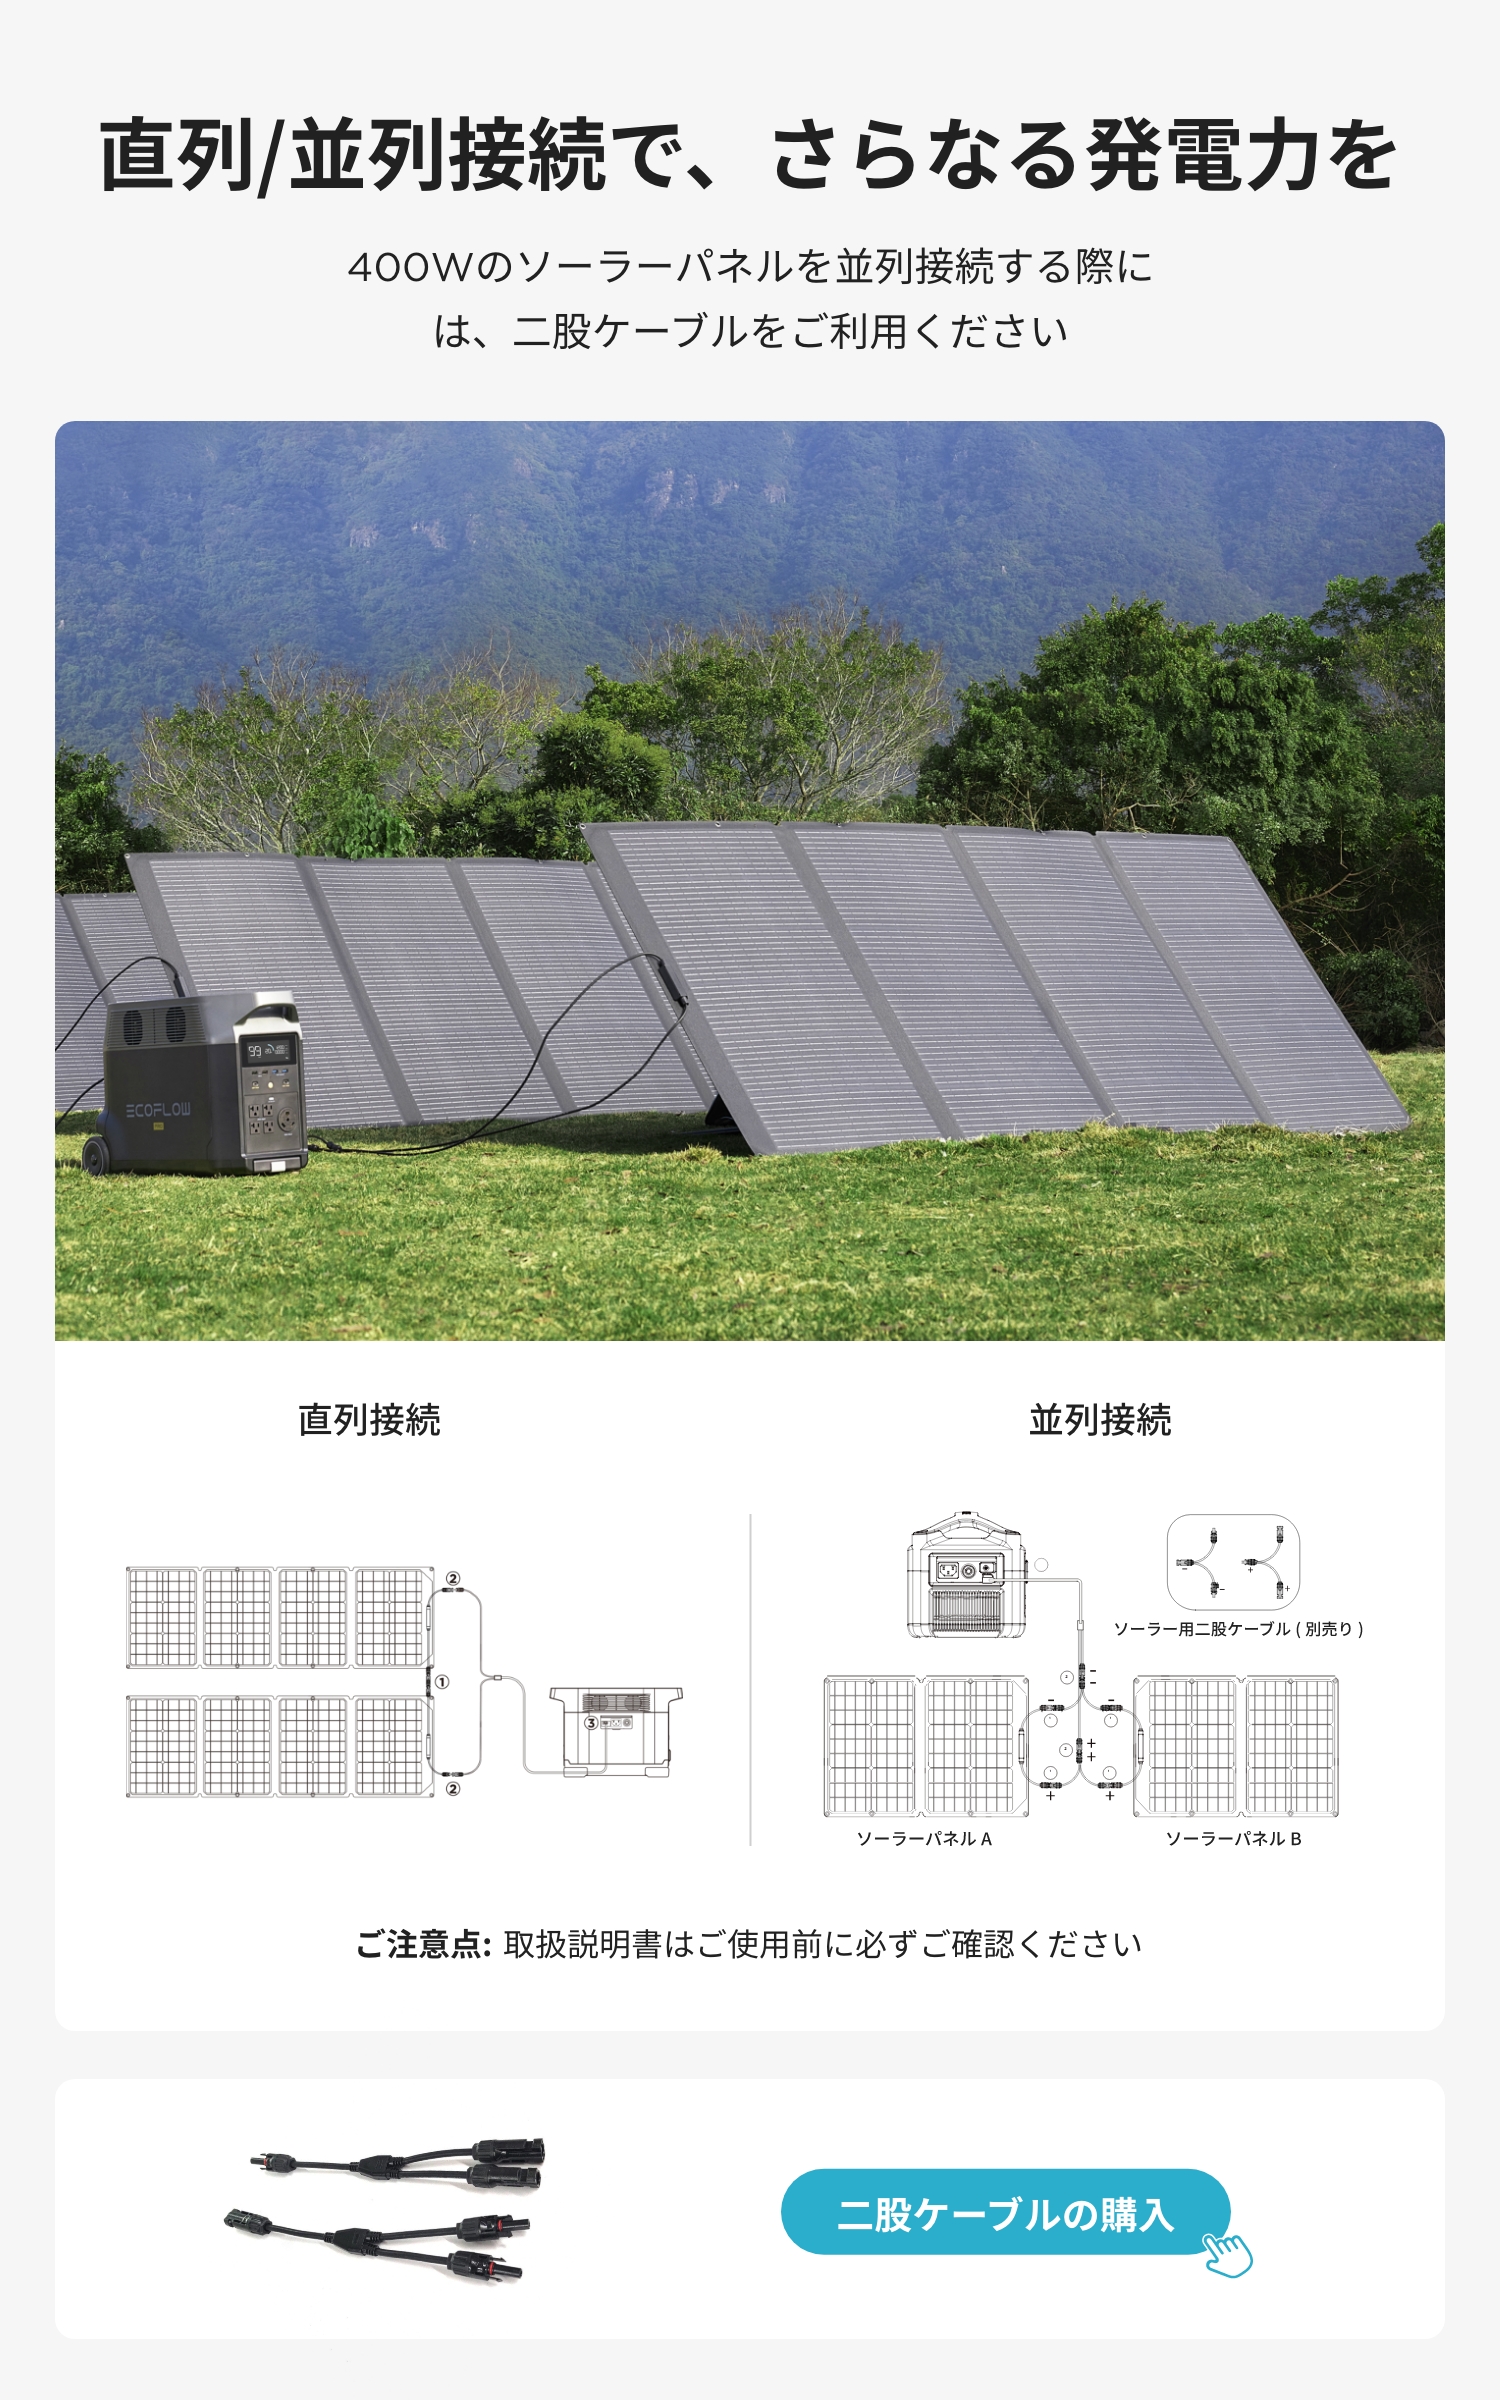 防災応援」ソーラーパネル 400W 太陽光発電 太陽光パネル ソーラー充電 